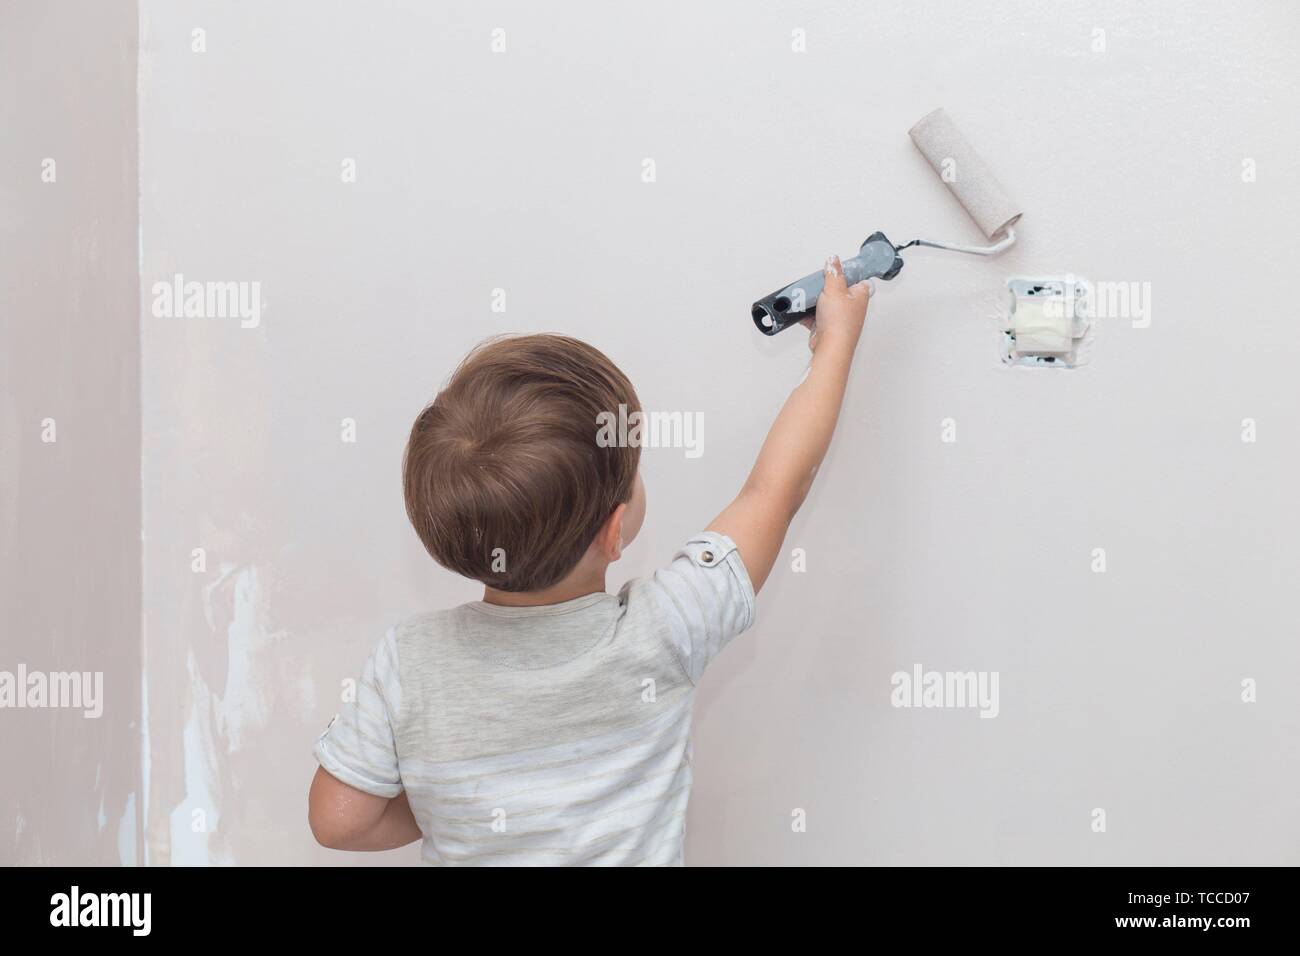 3 años cute little boy con rodillo de pintura en la mano. Los niños ayudando a los quehaceres de la casa concepto. Foto de stock